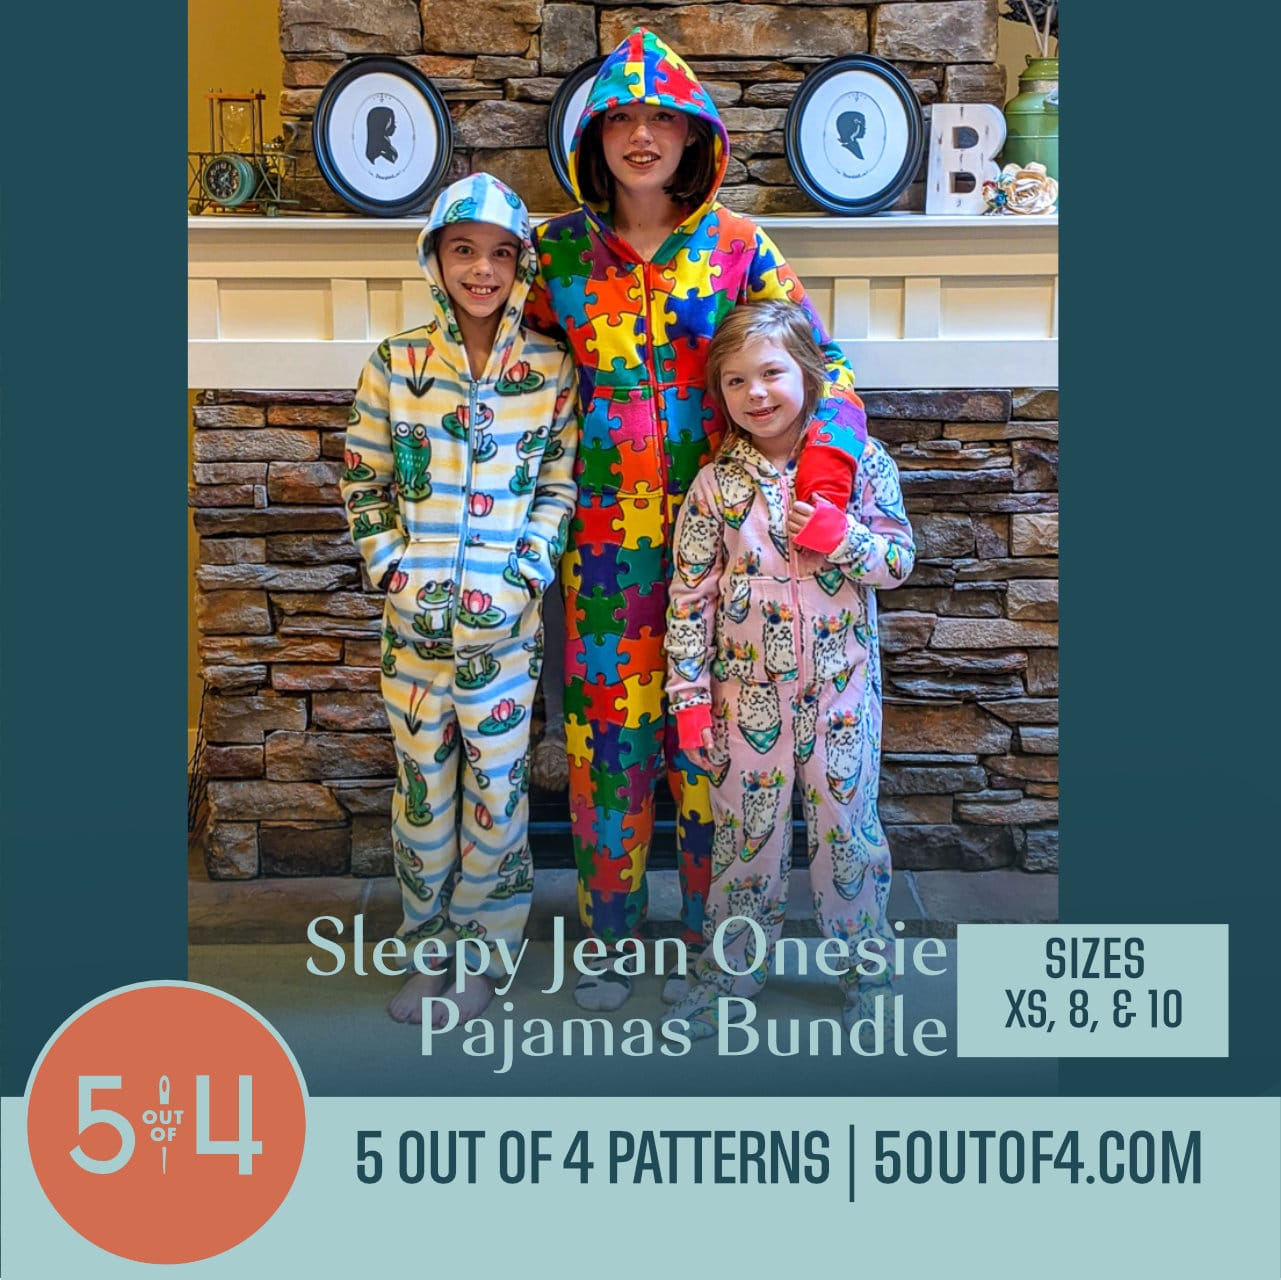 Men's Sleepy Jean Onesie Pajamas - 5 out of 4 Patterns